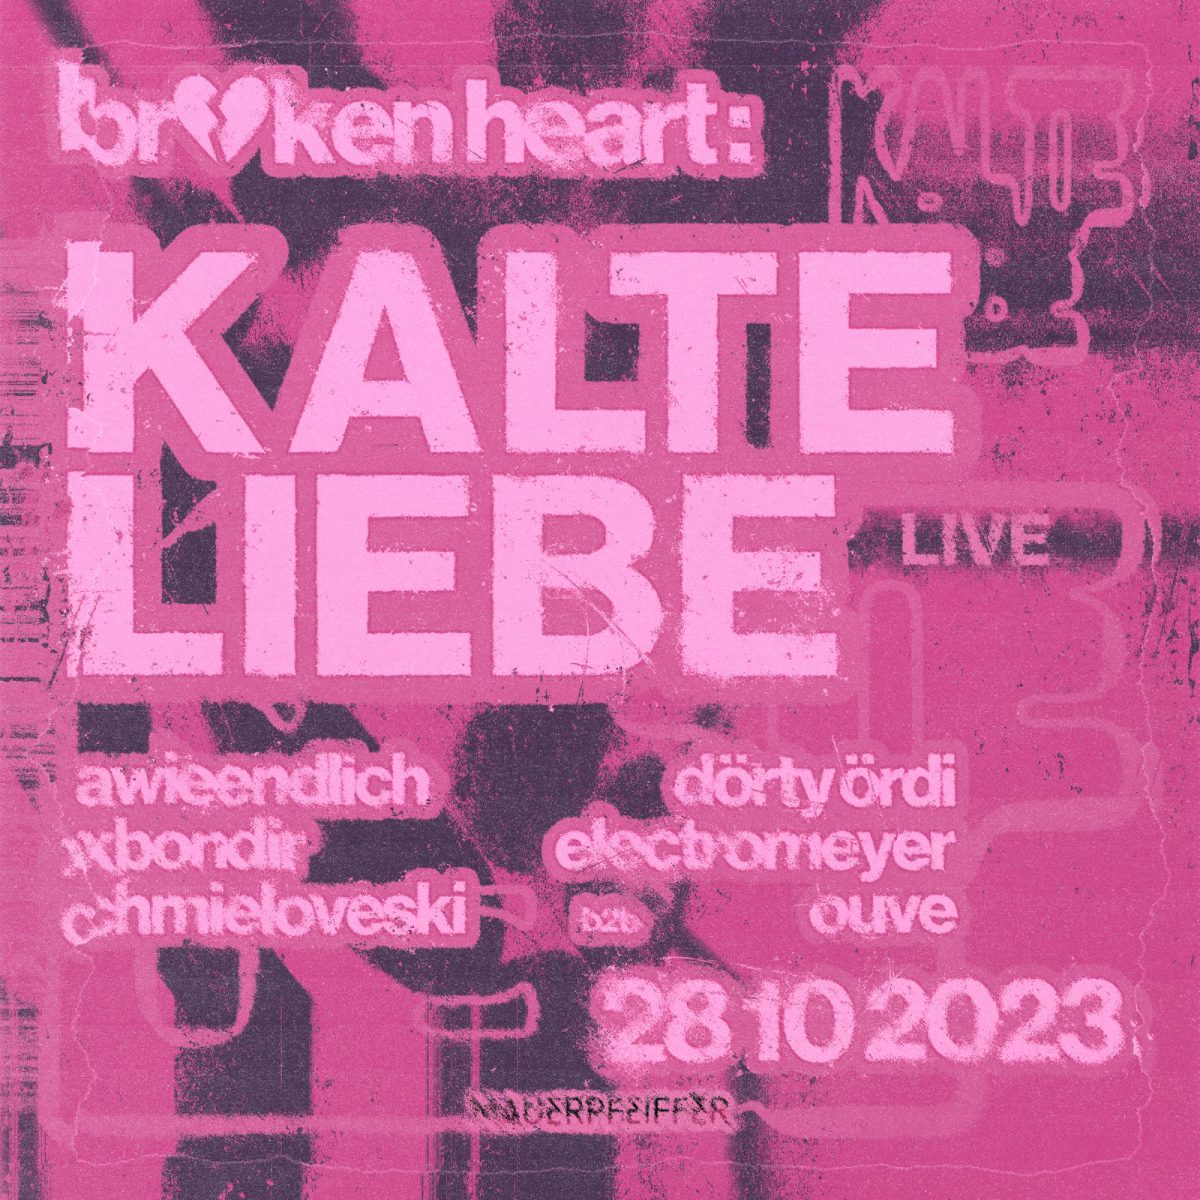 Borken Heart w/ KALTE LIEBE live